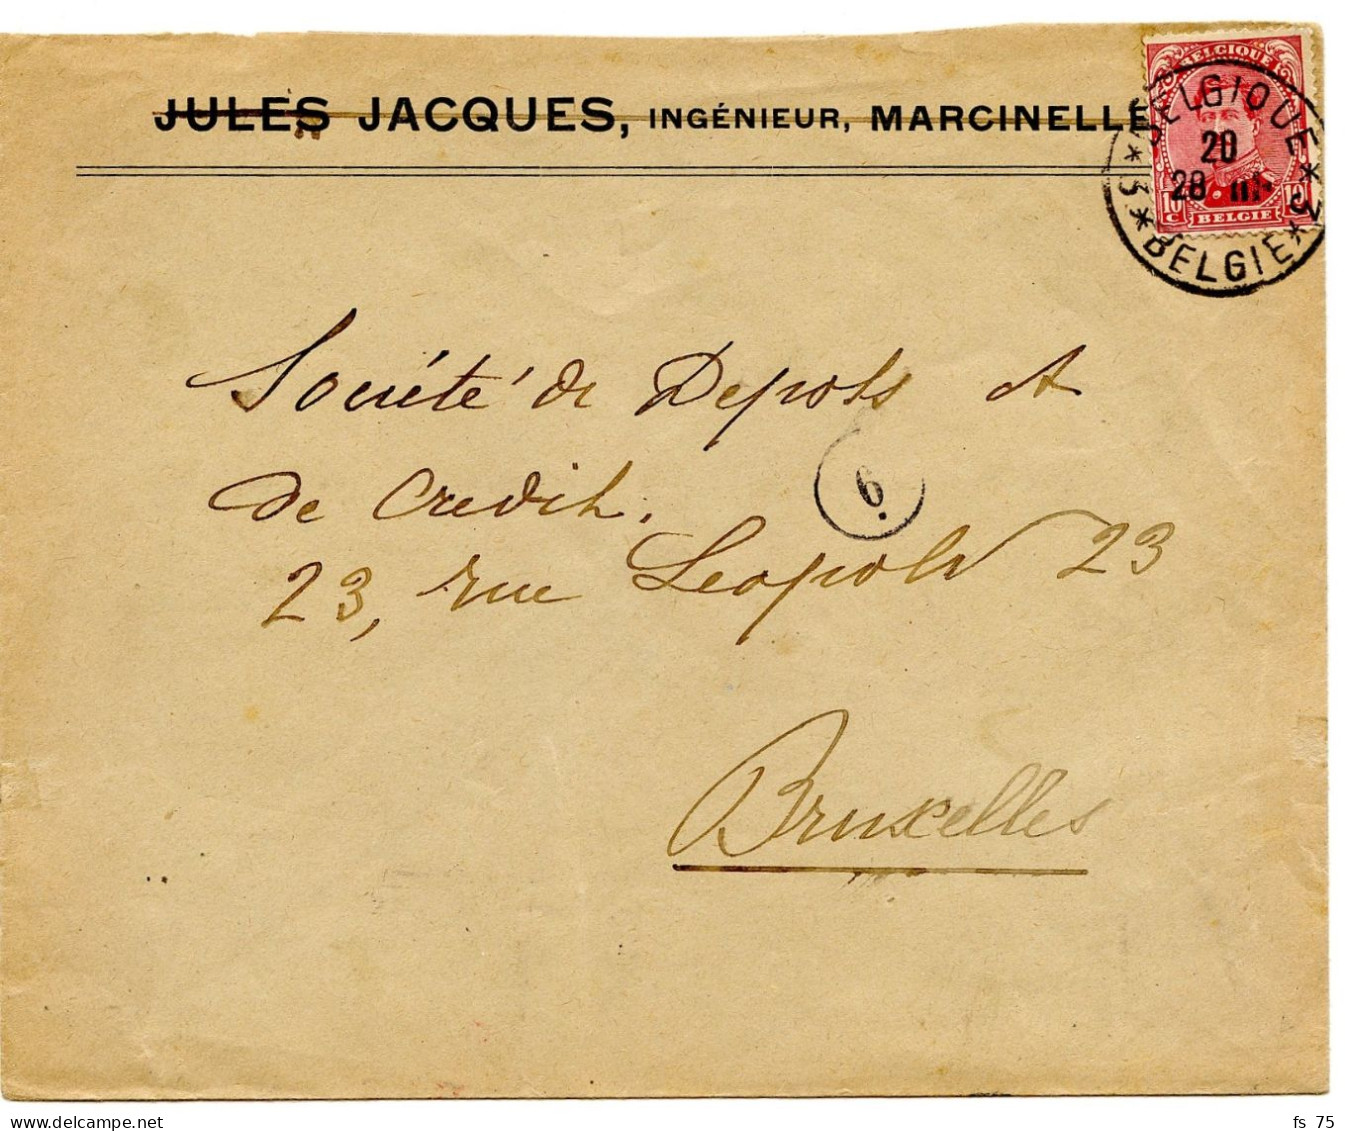 BELGIQUE - COB 138 SIMPLE CERCLE BILINGUE 3 * BELGIQUE * 3  SUR LETTRE DE MARCINELLE, 1919 - Briefe U. Dokumente